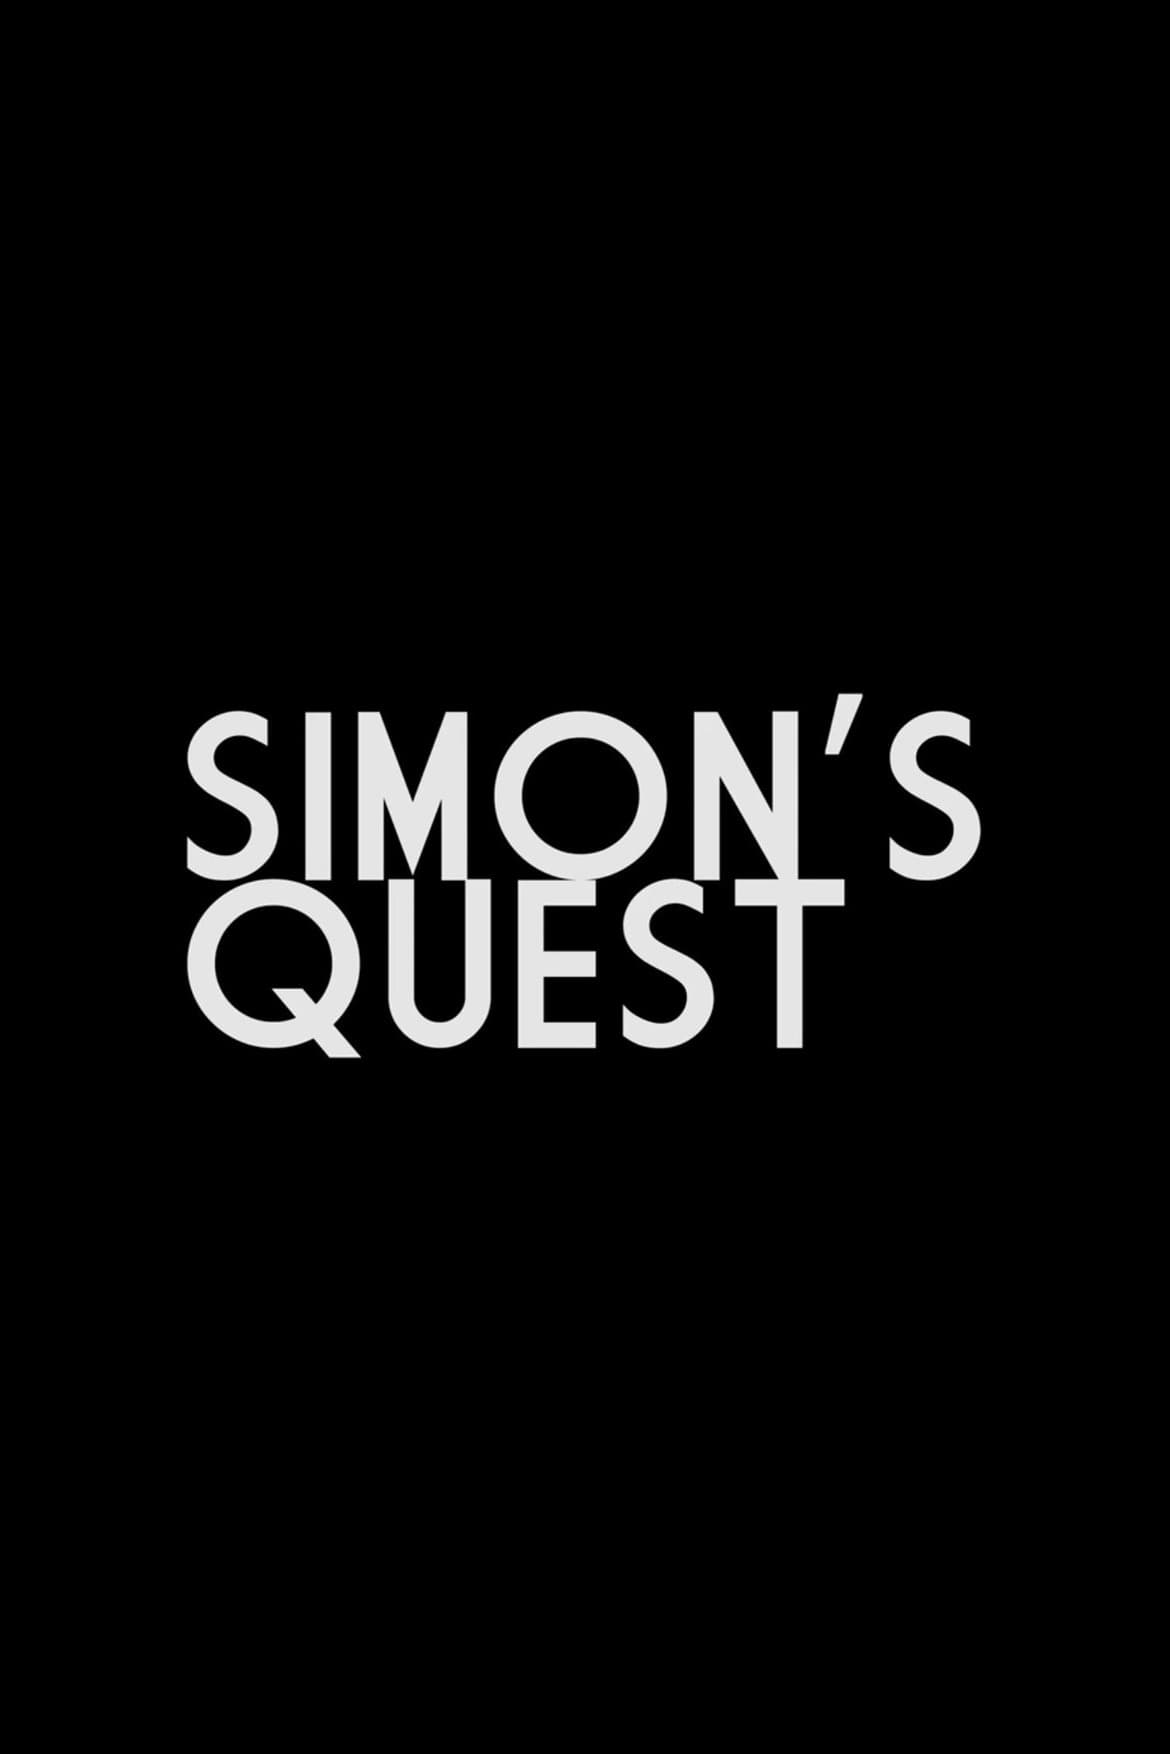 Simon’s Quest